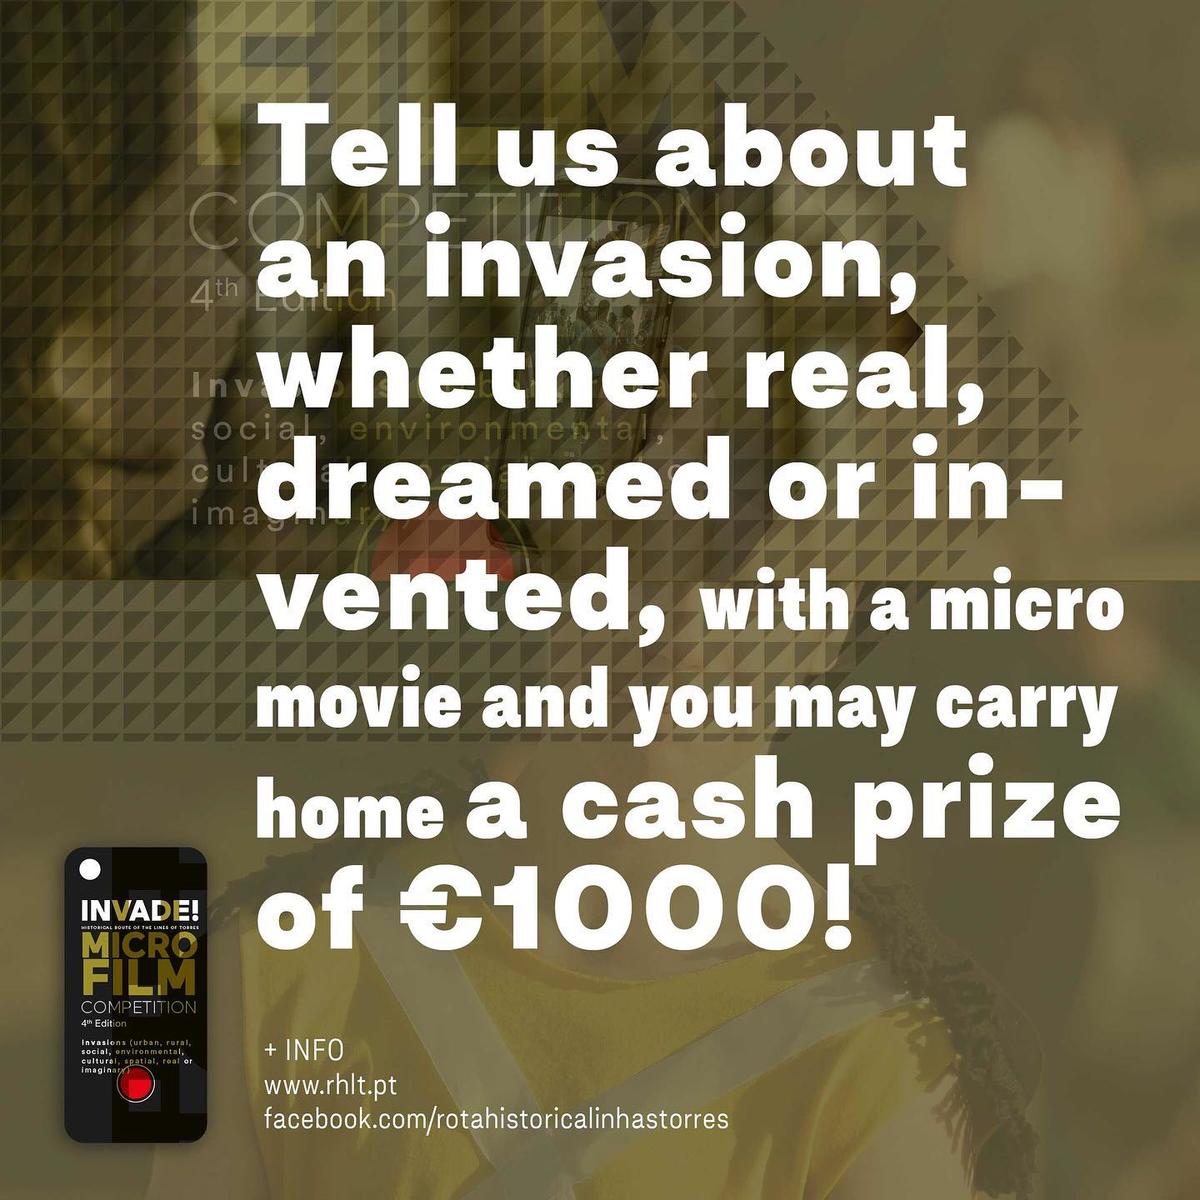 Concurso de Micro Metragens “INVADE” - tradução em inglês